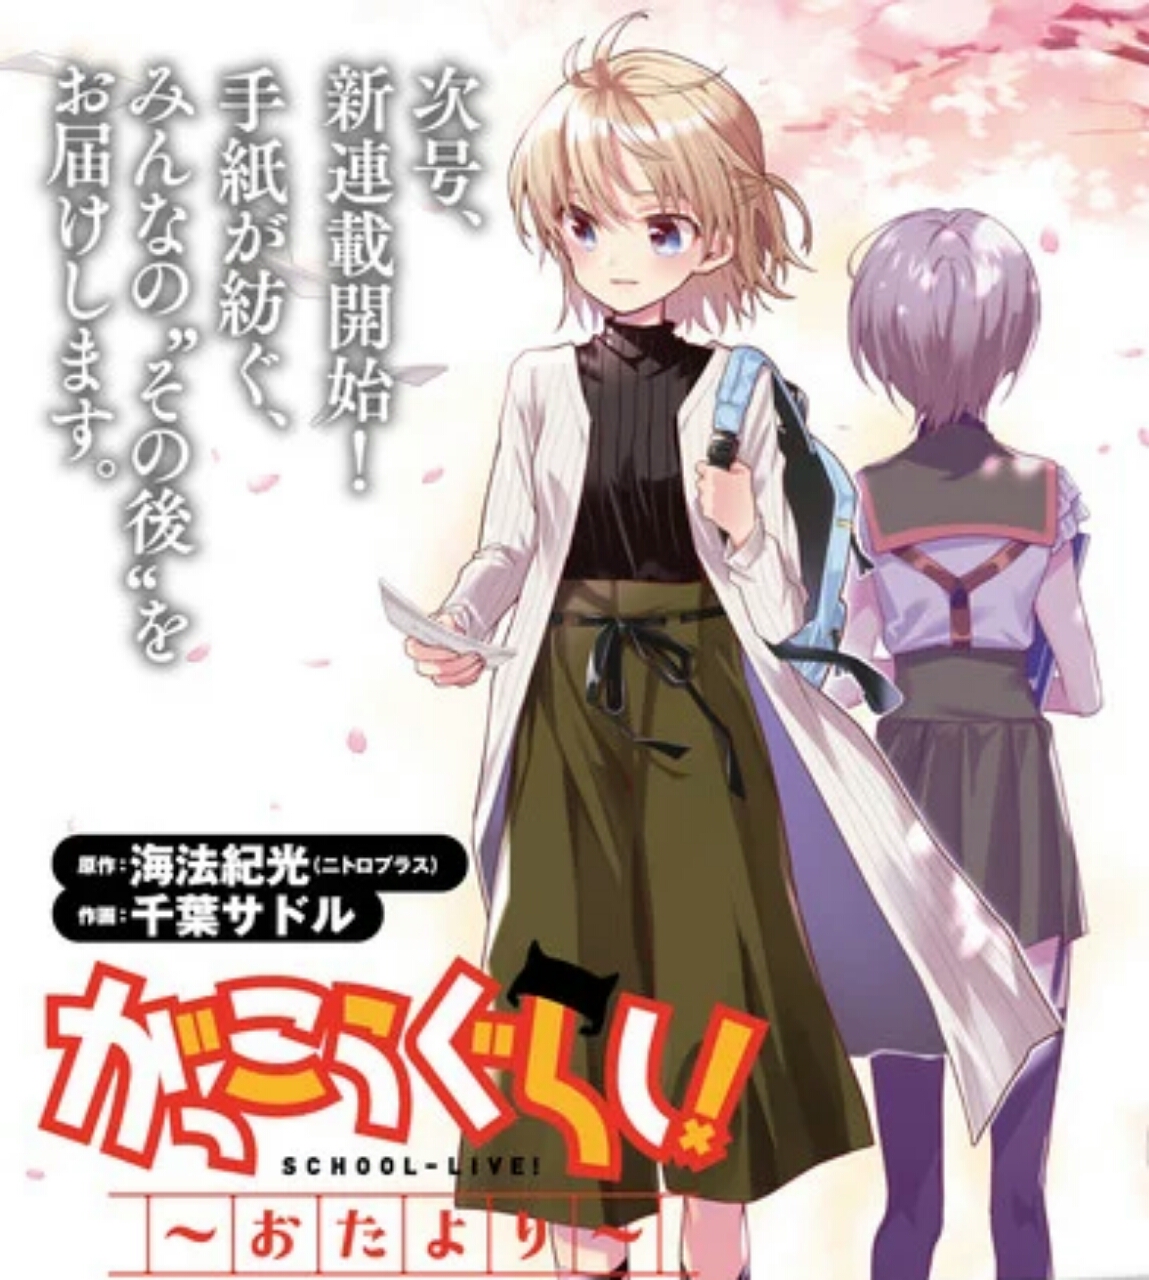 School-Live! mangaen får sequel til juni